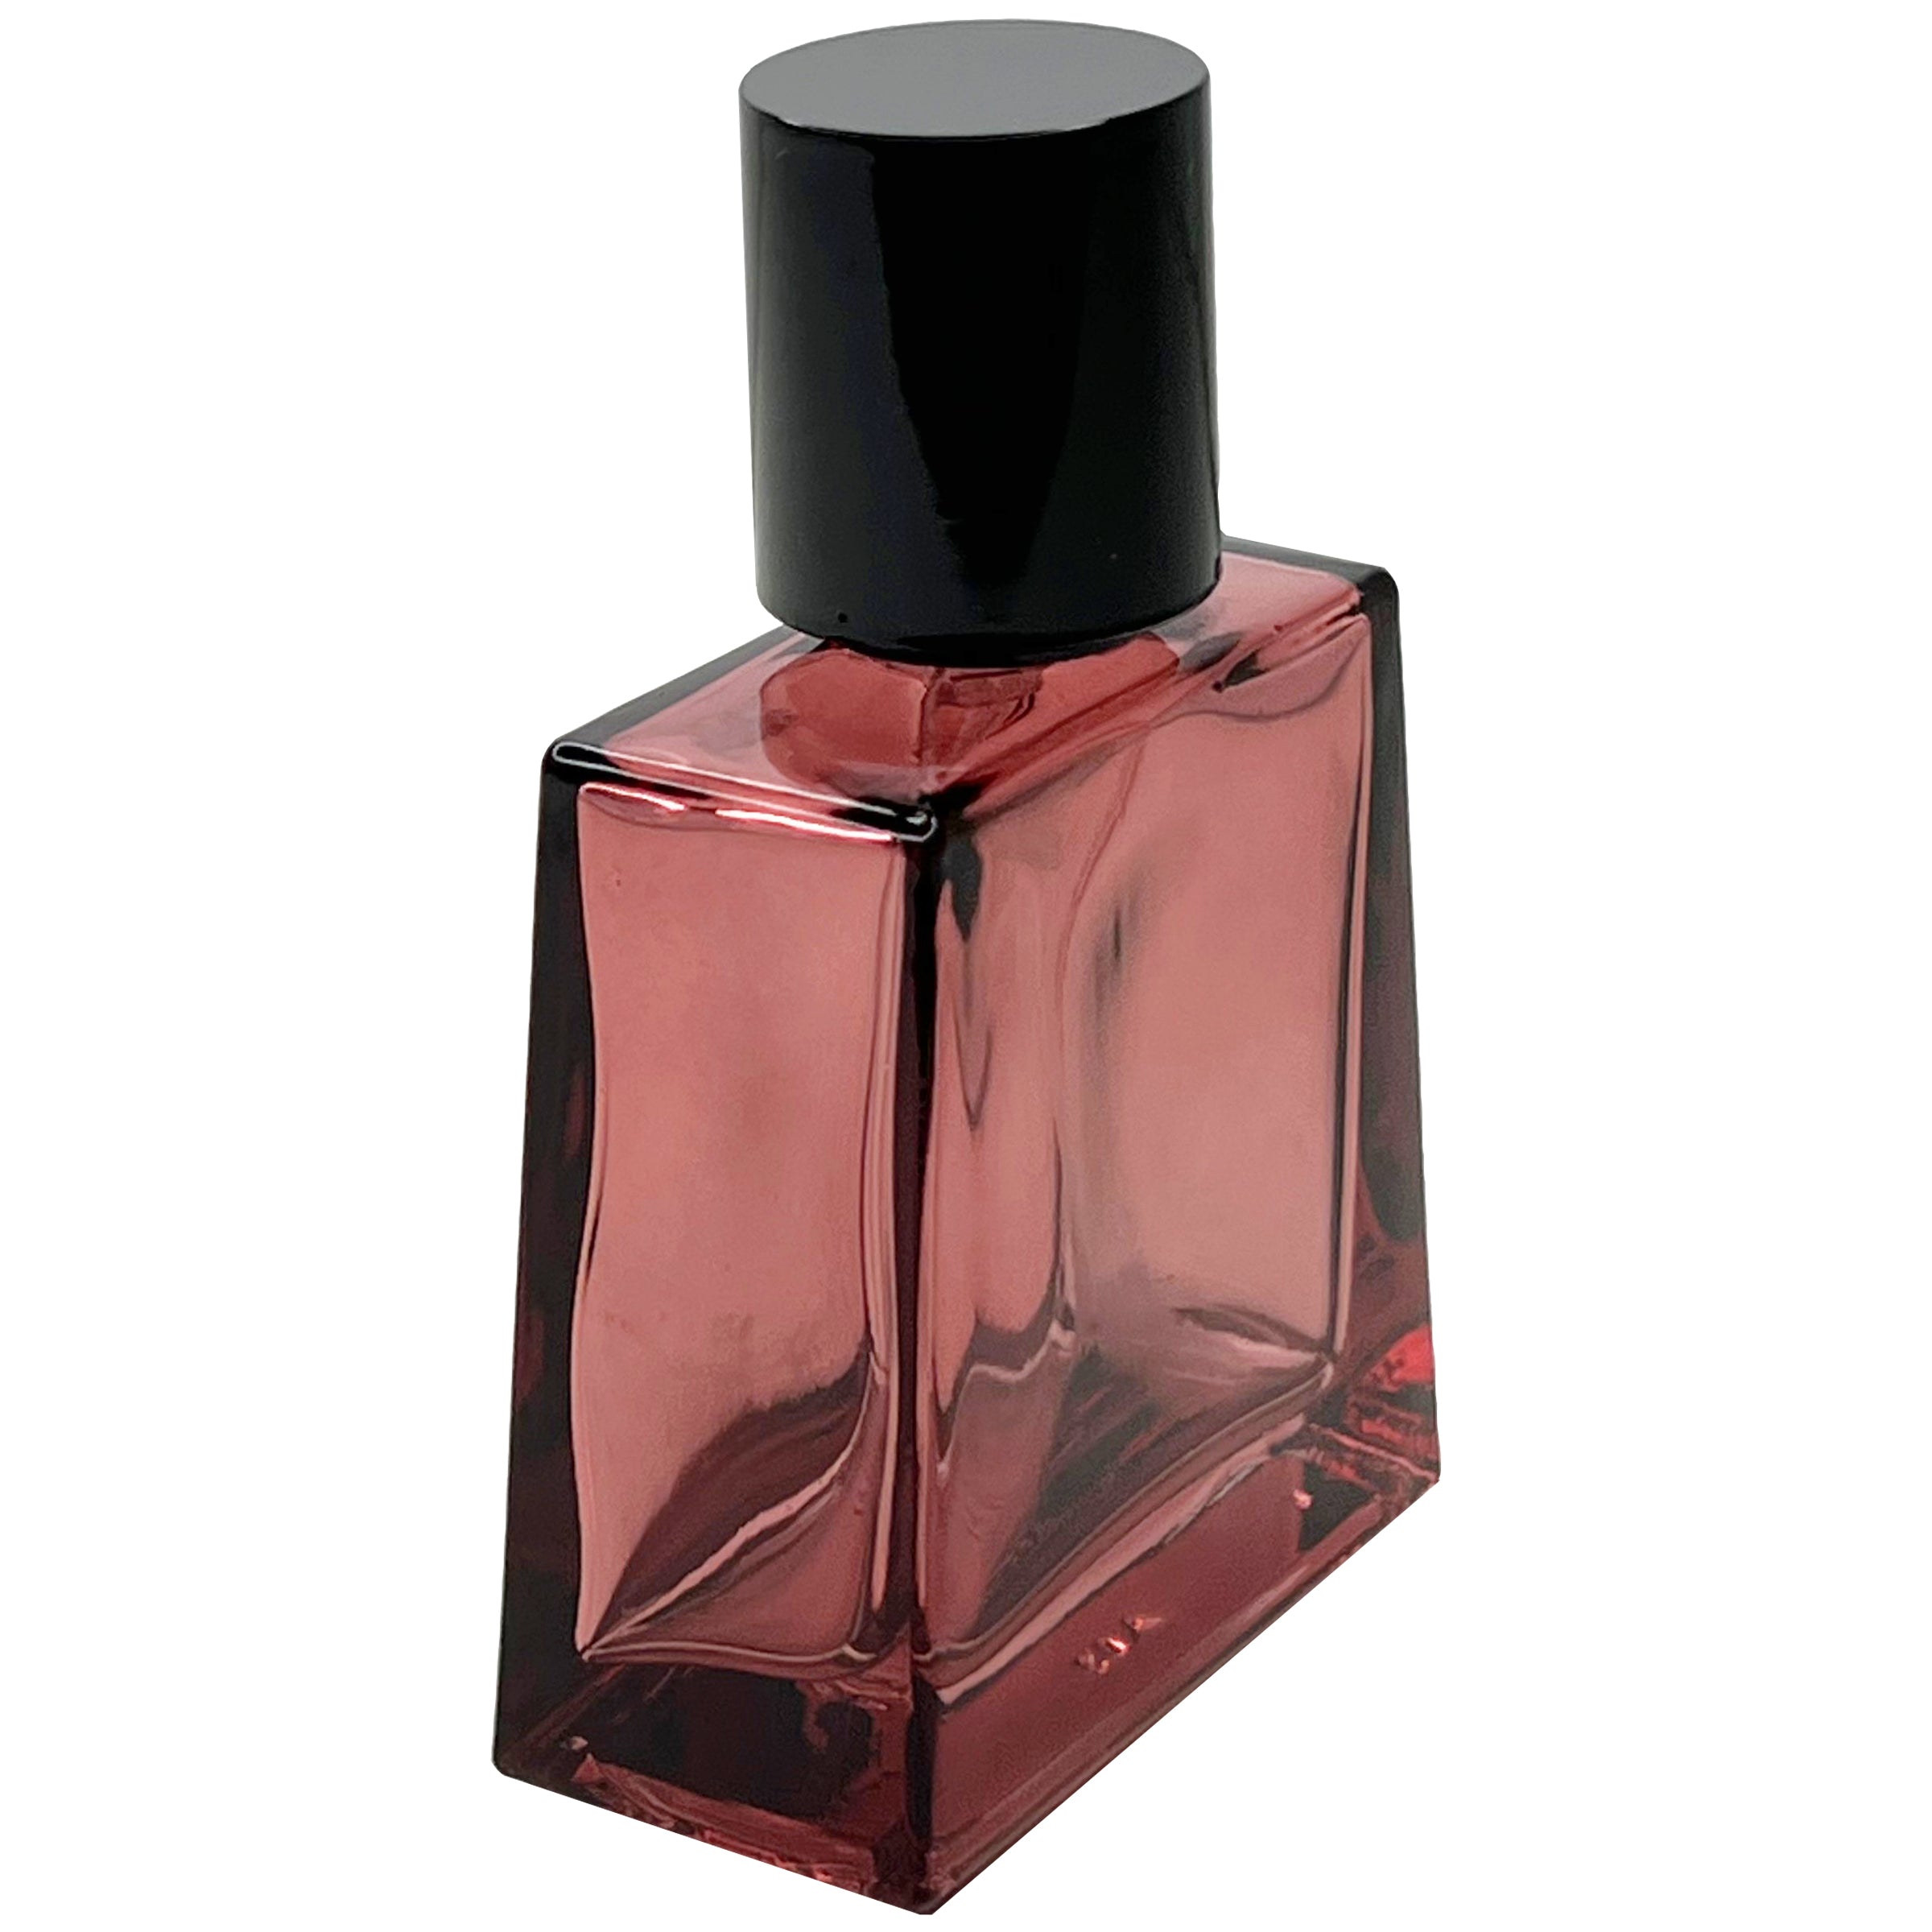 30ml 1oz colored glass trapezoid perfume spray bottles